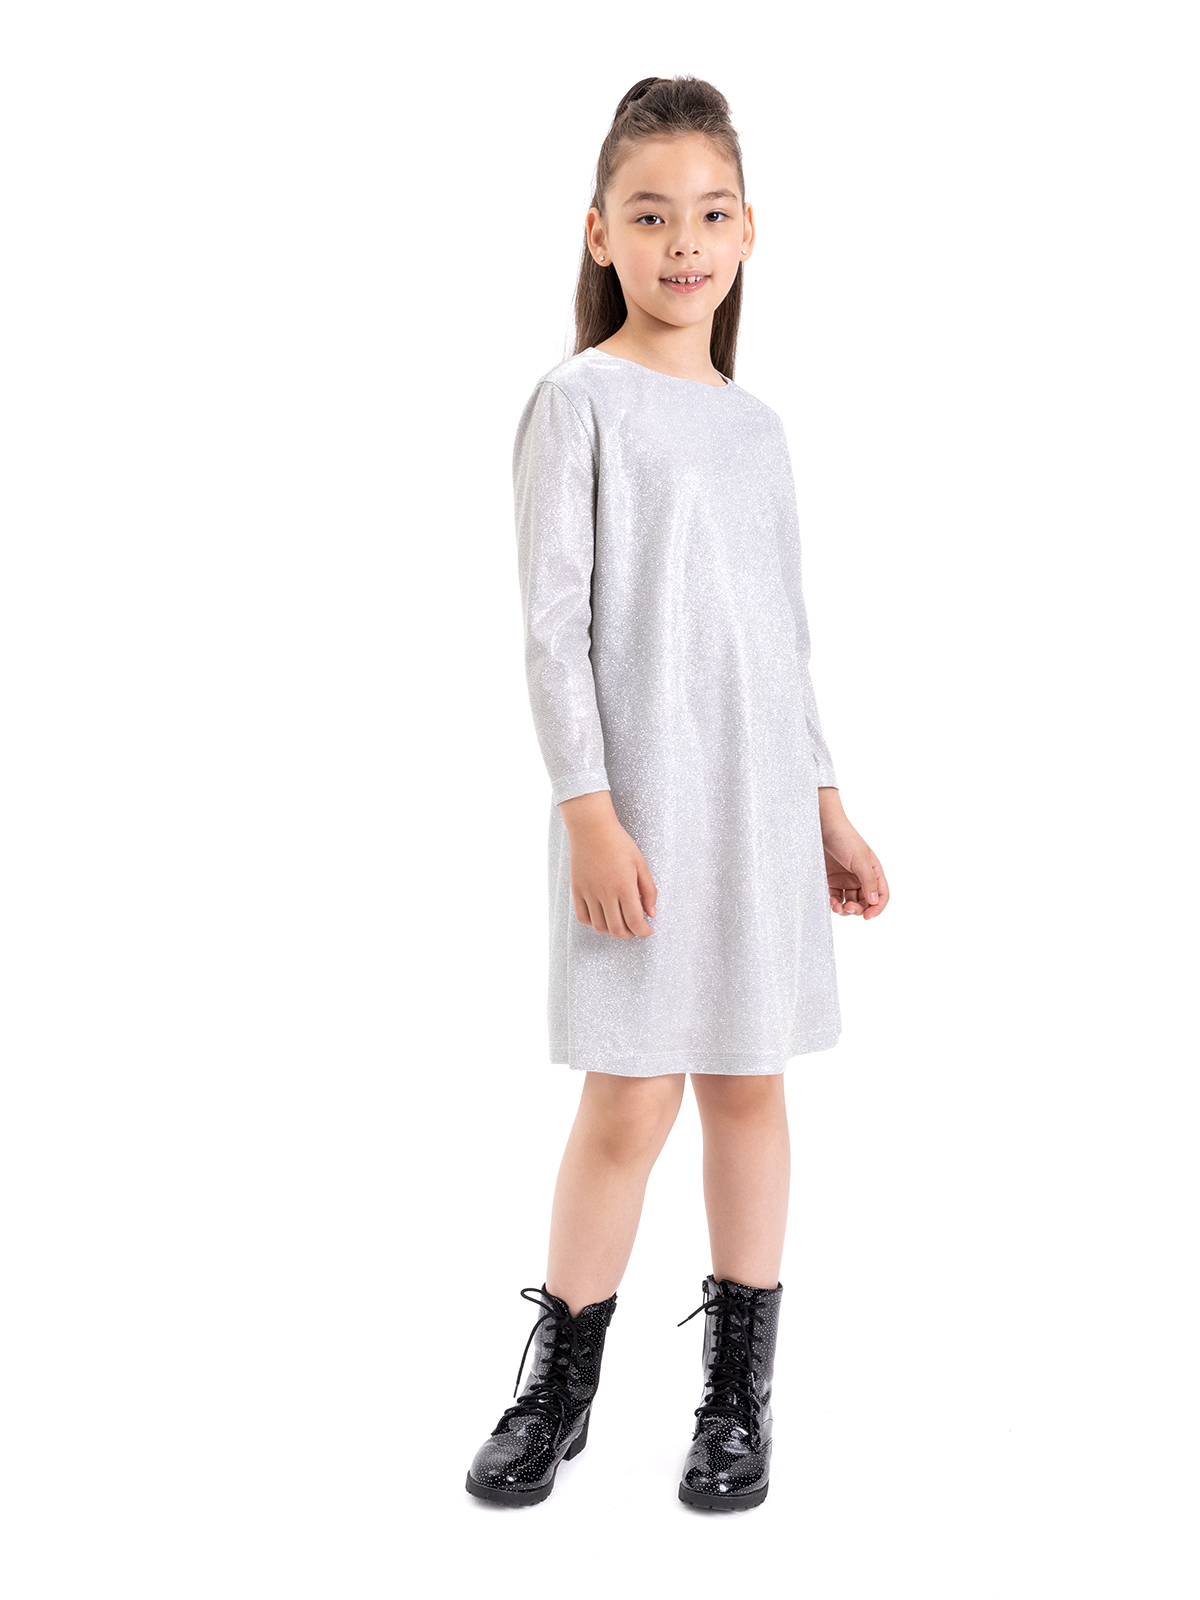 Фото товара Праздничное платье для девочки О85848_3 от Карамелли